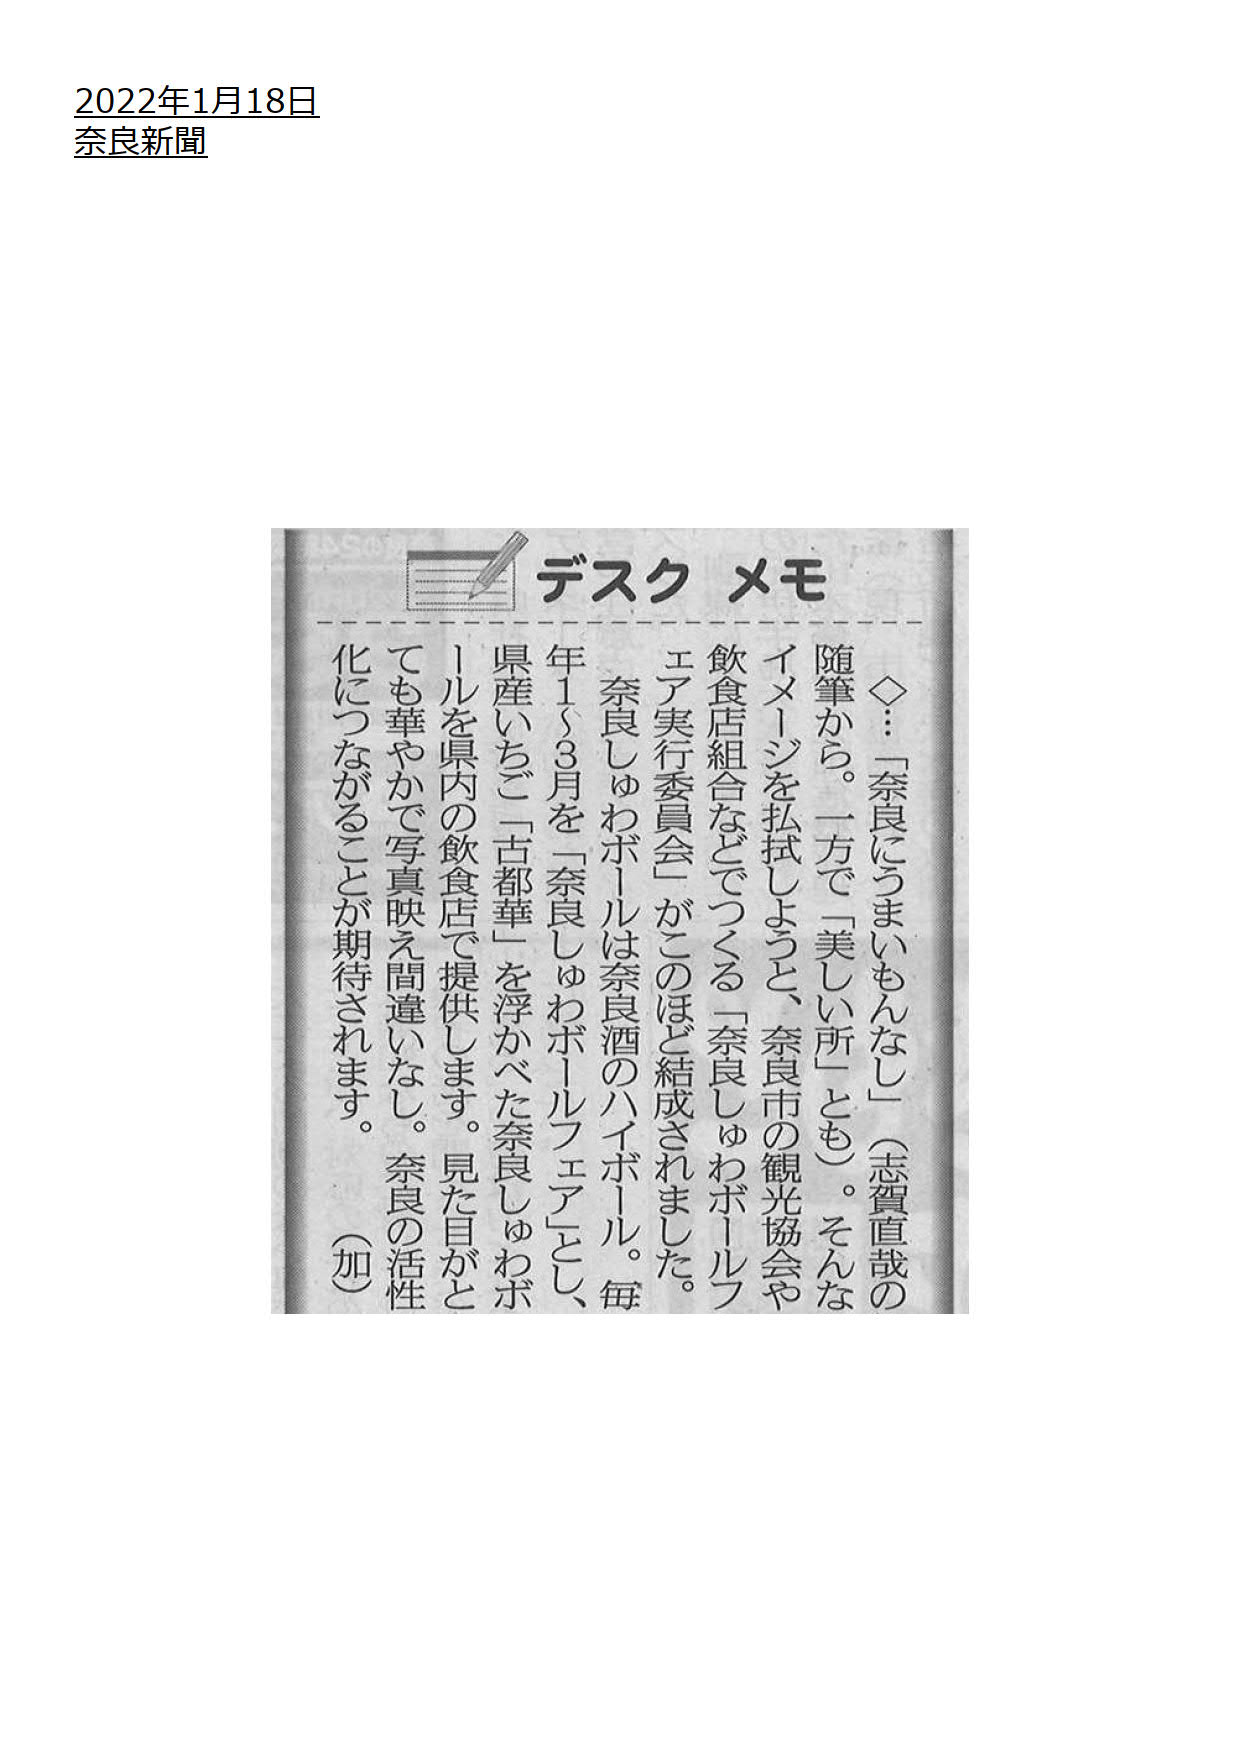 １月１８日奈良新聞に「奈良しゅわボールフェア」が掲載されました！